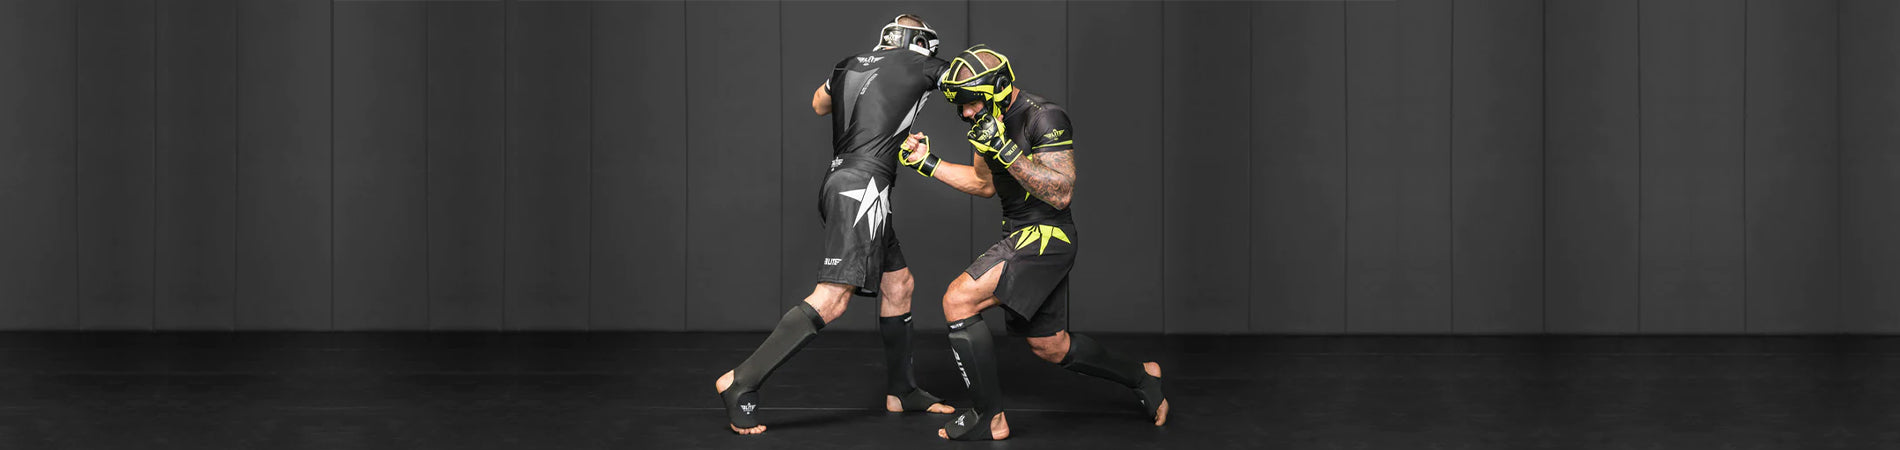 Necessary MMA Gear for Beginner Training